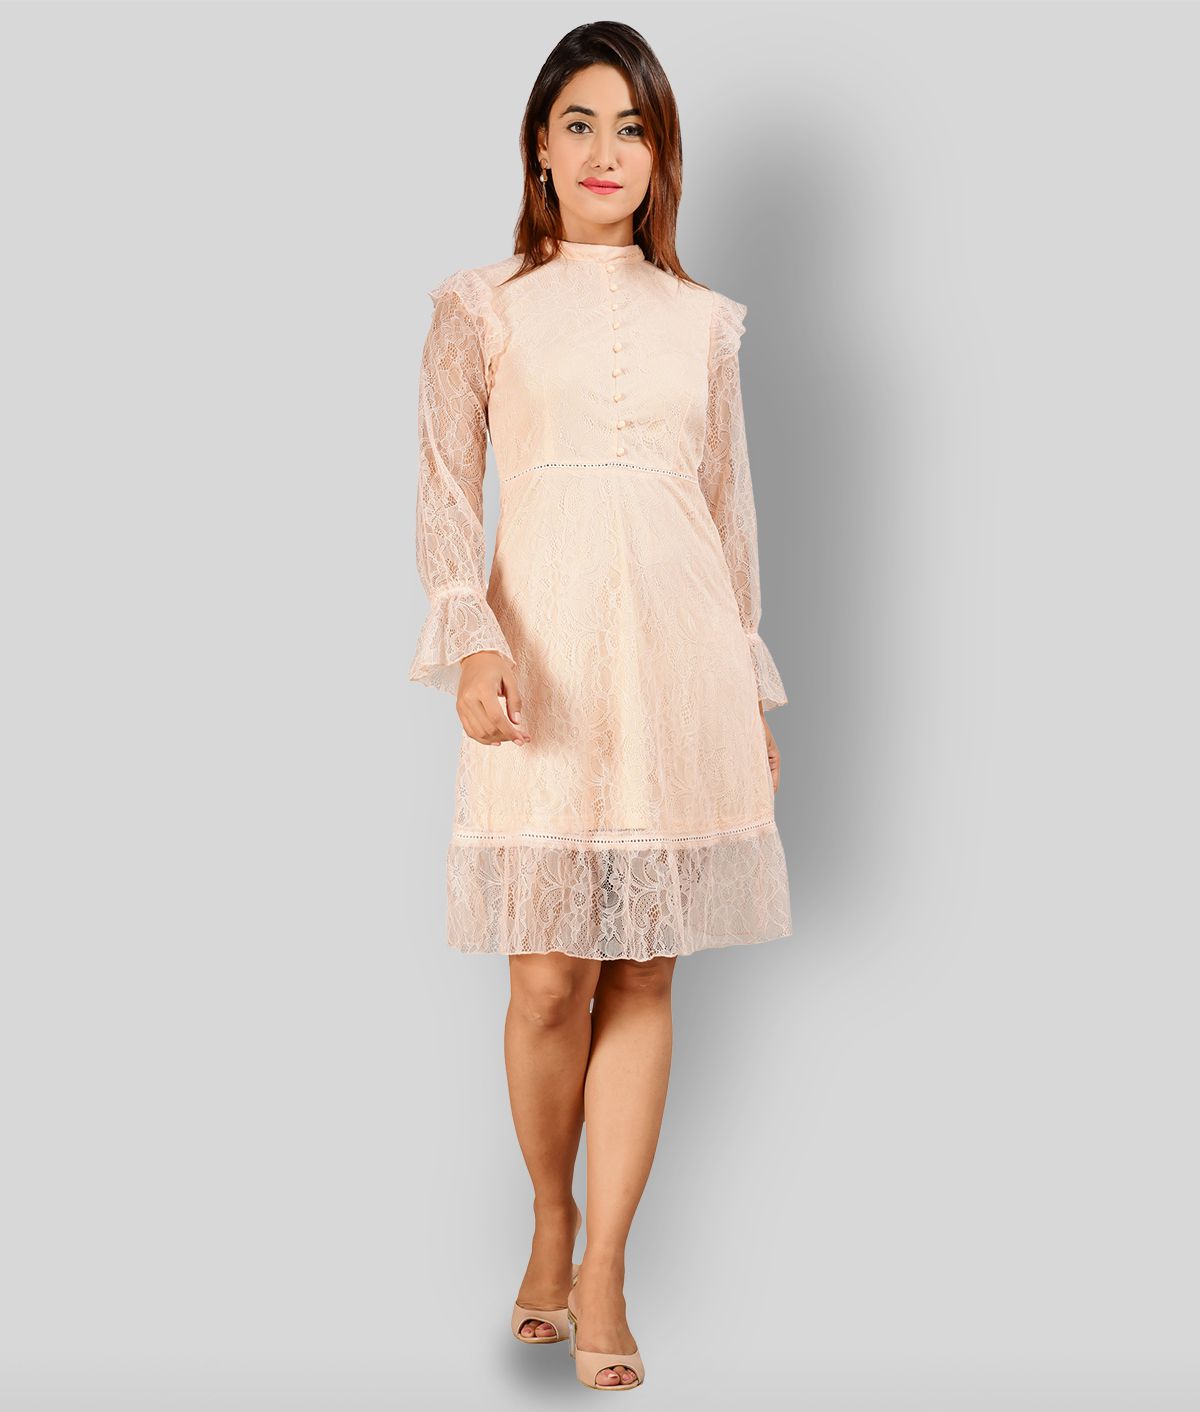 ELEENA - Beige Net Women's A-line Dress ( Pack of 1 )